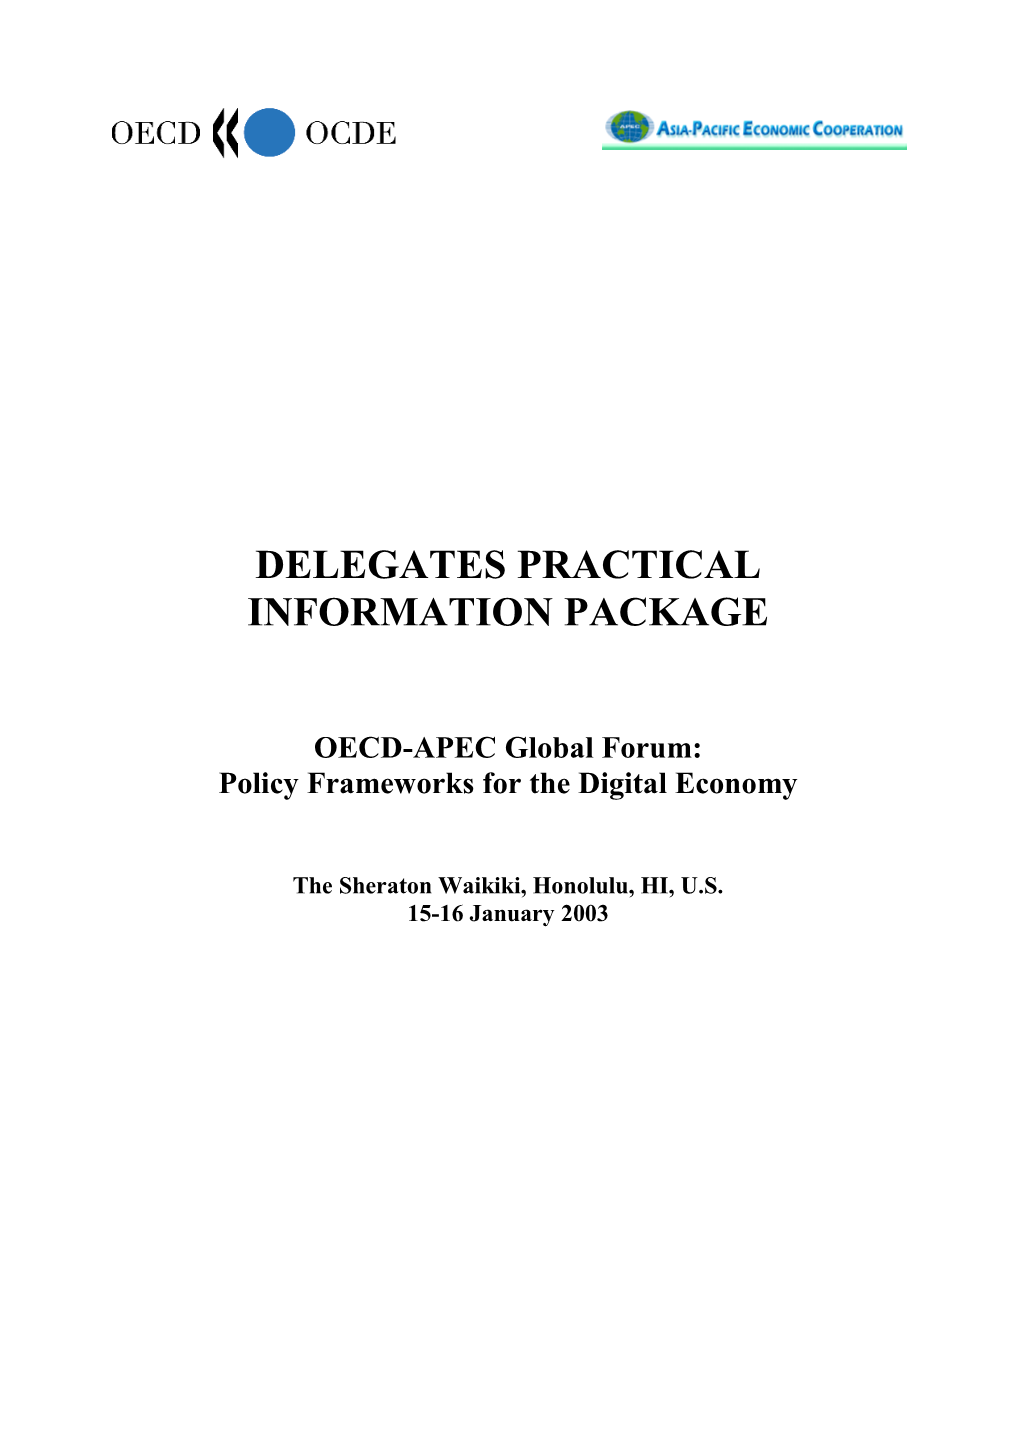 Delegates Practical Information Package